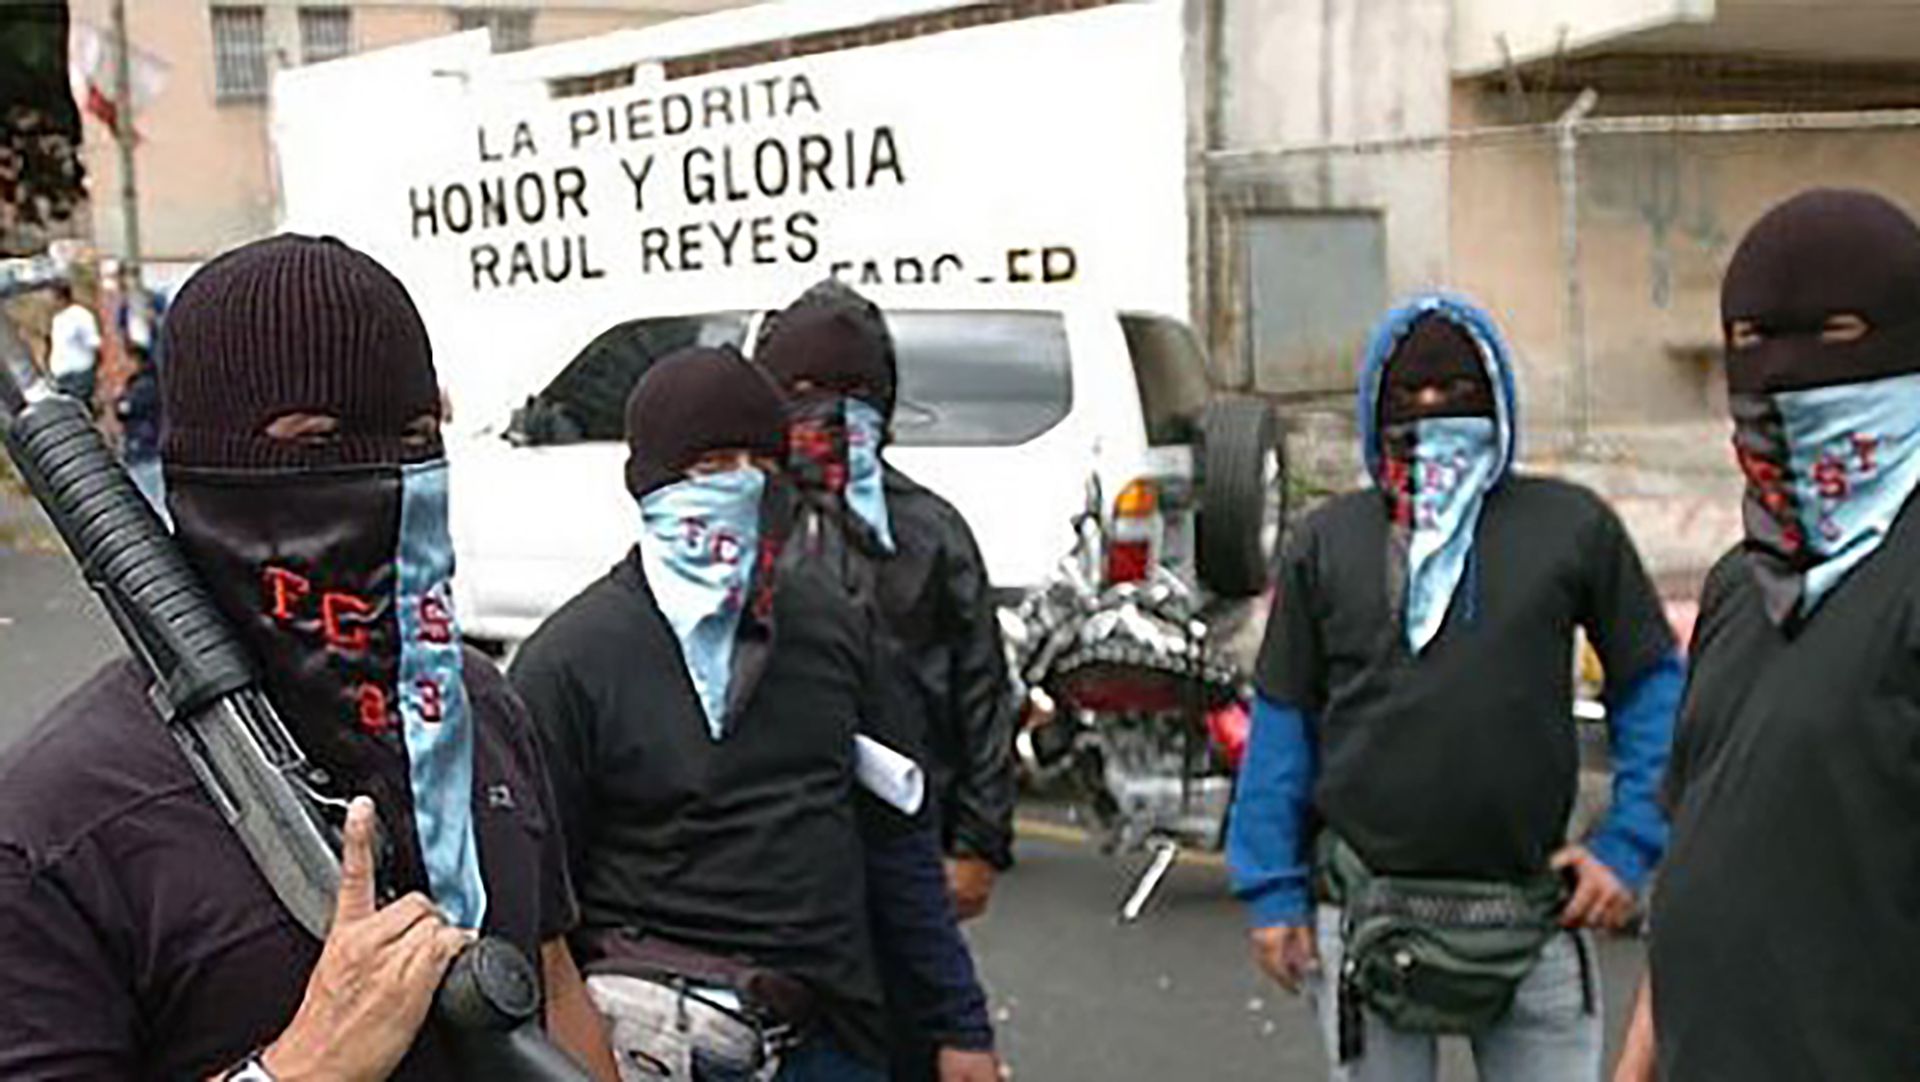 Con la cara cubierta, armados y motorizados, los colectivos chavistas dominan las actividades criminales en los barrios de Venezuela, mantienen el control político y sofocan la disidencia